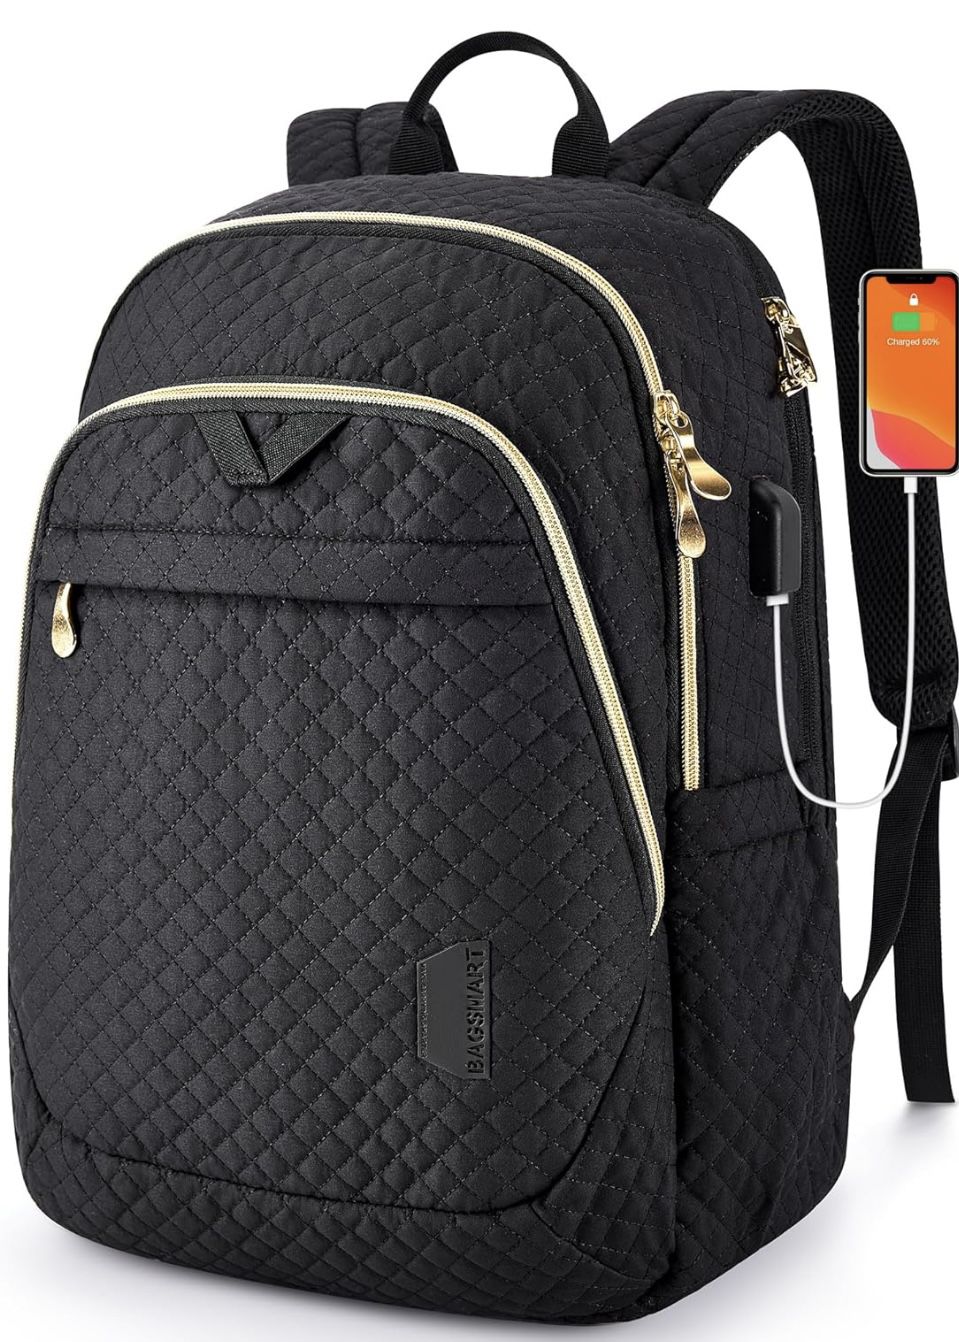 Bagsmart Backpack